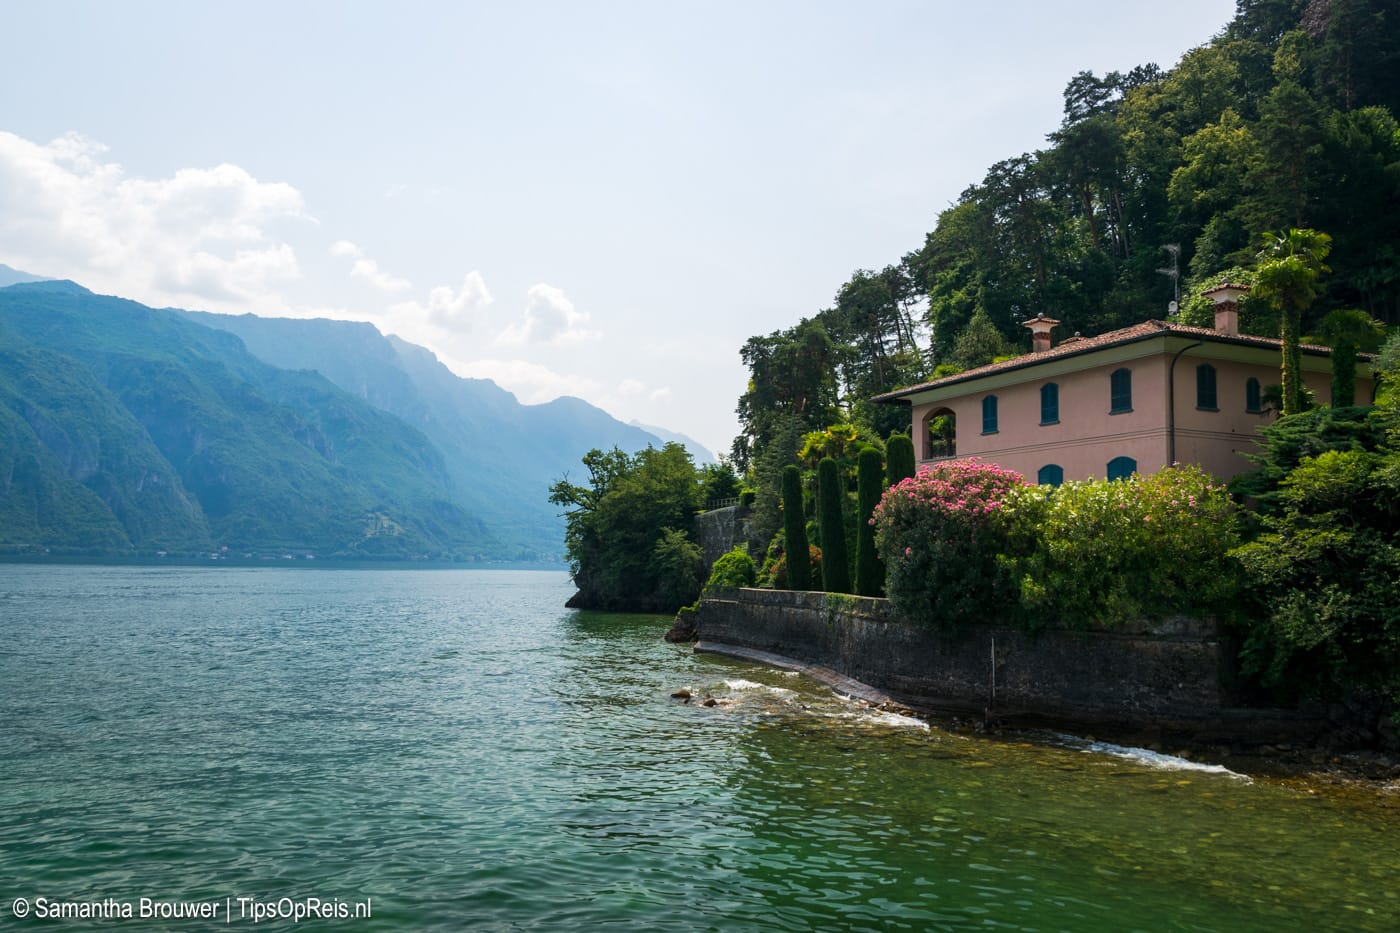 Bij het Comomeer vind je veel villa's aan het water, zoals deze bij Bellagio